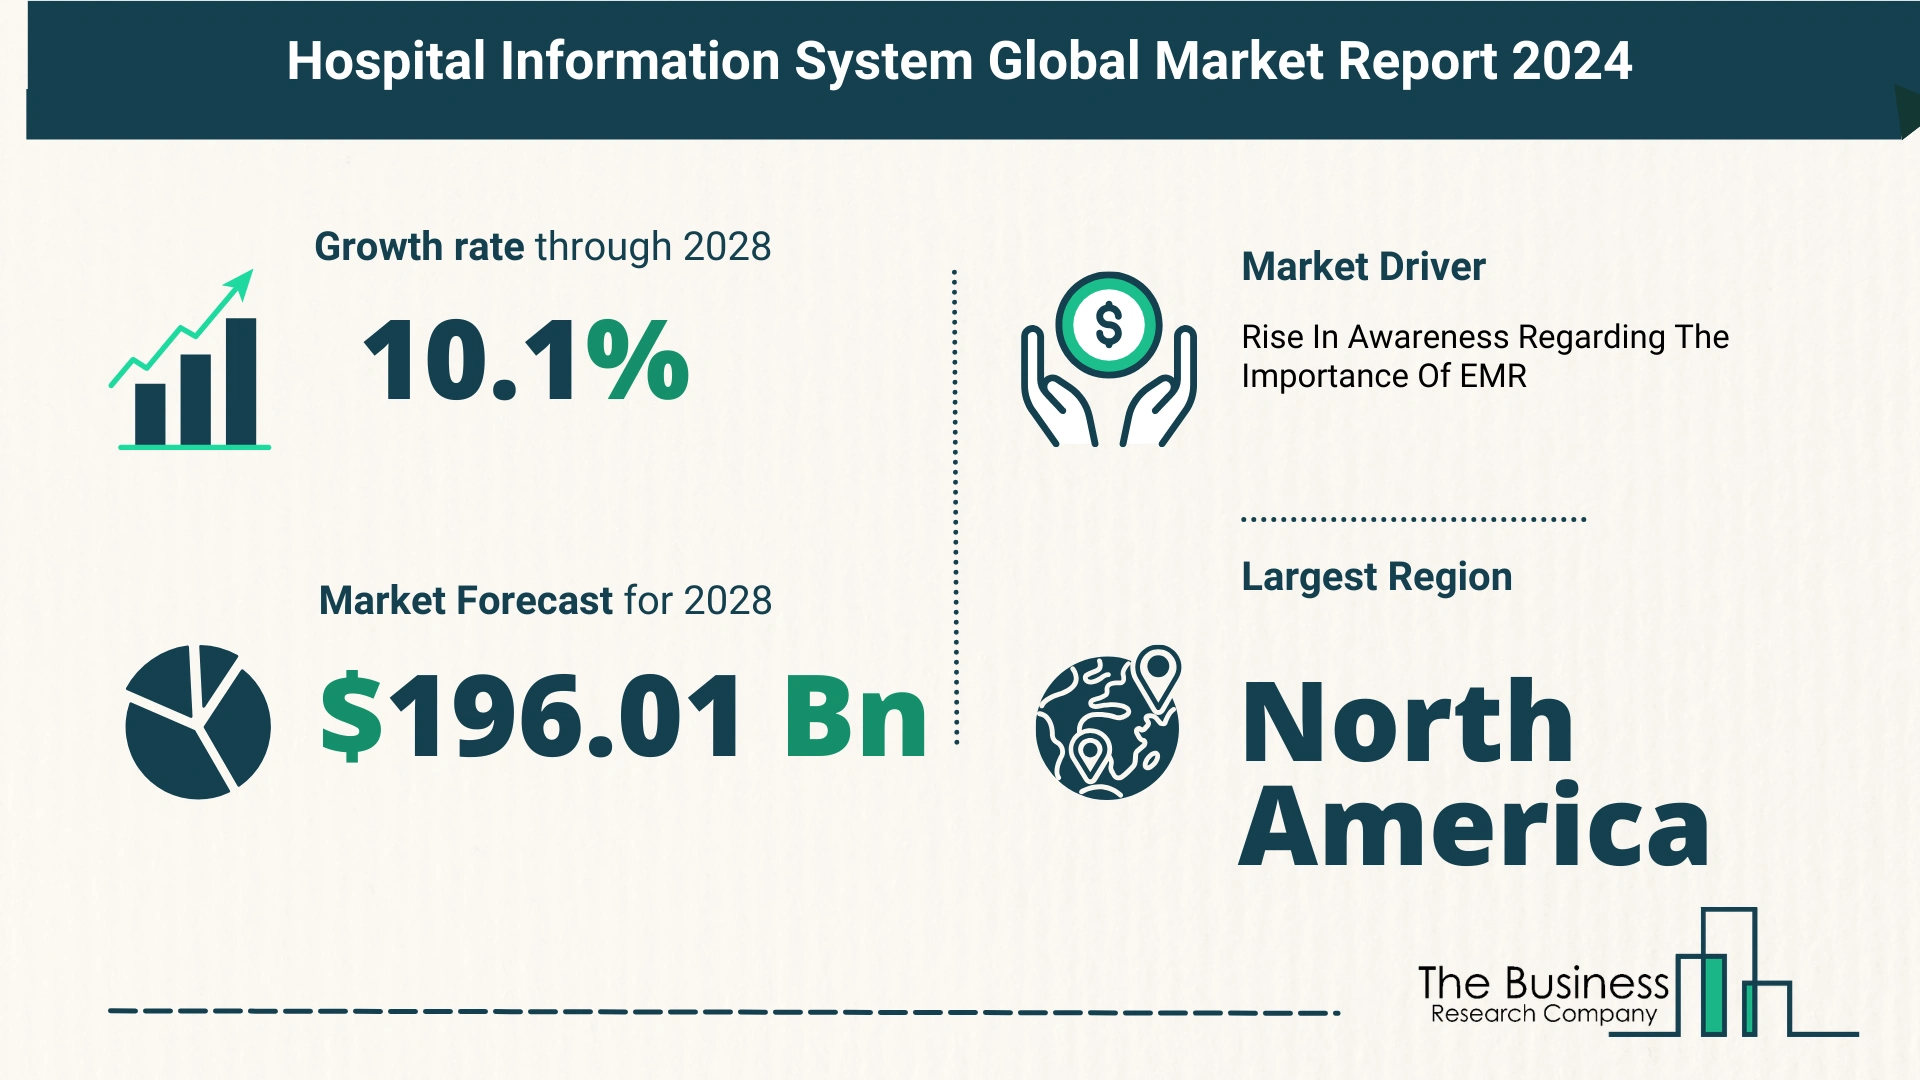 Global Hospital Information System Market Size